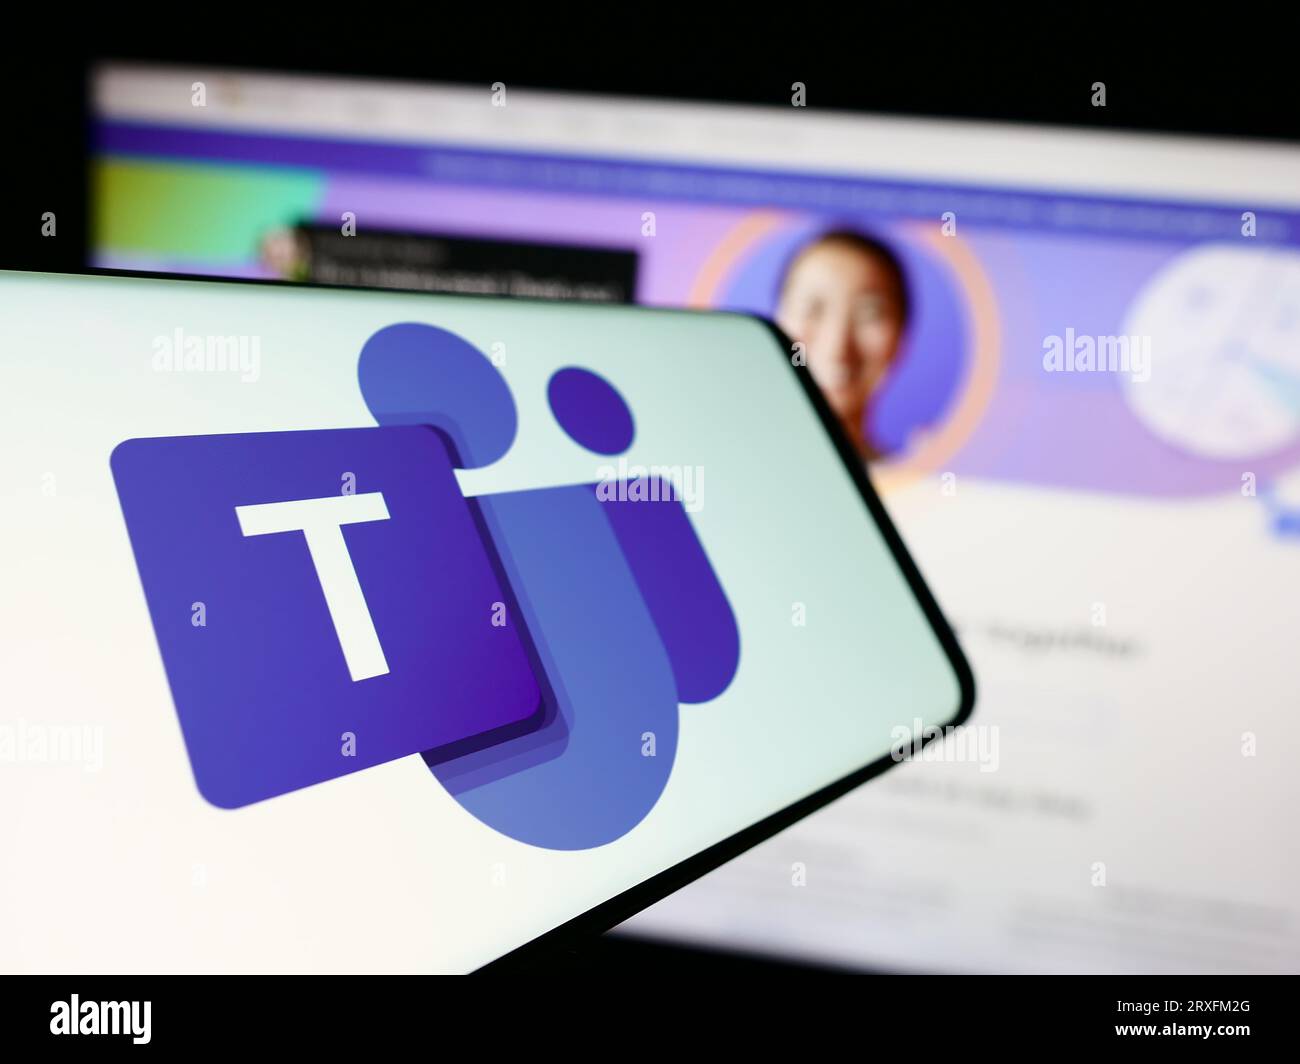 Cellulare con logo della piattaforma di comunicazione aziendale Microsoft Teams sullo schermo davanti al sito Web. Mettere a fuoco il display centrale sinistro del telefono. Foto Stock